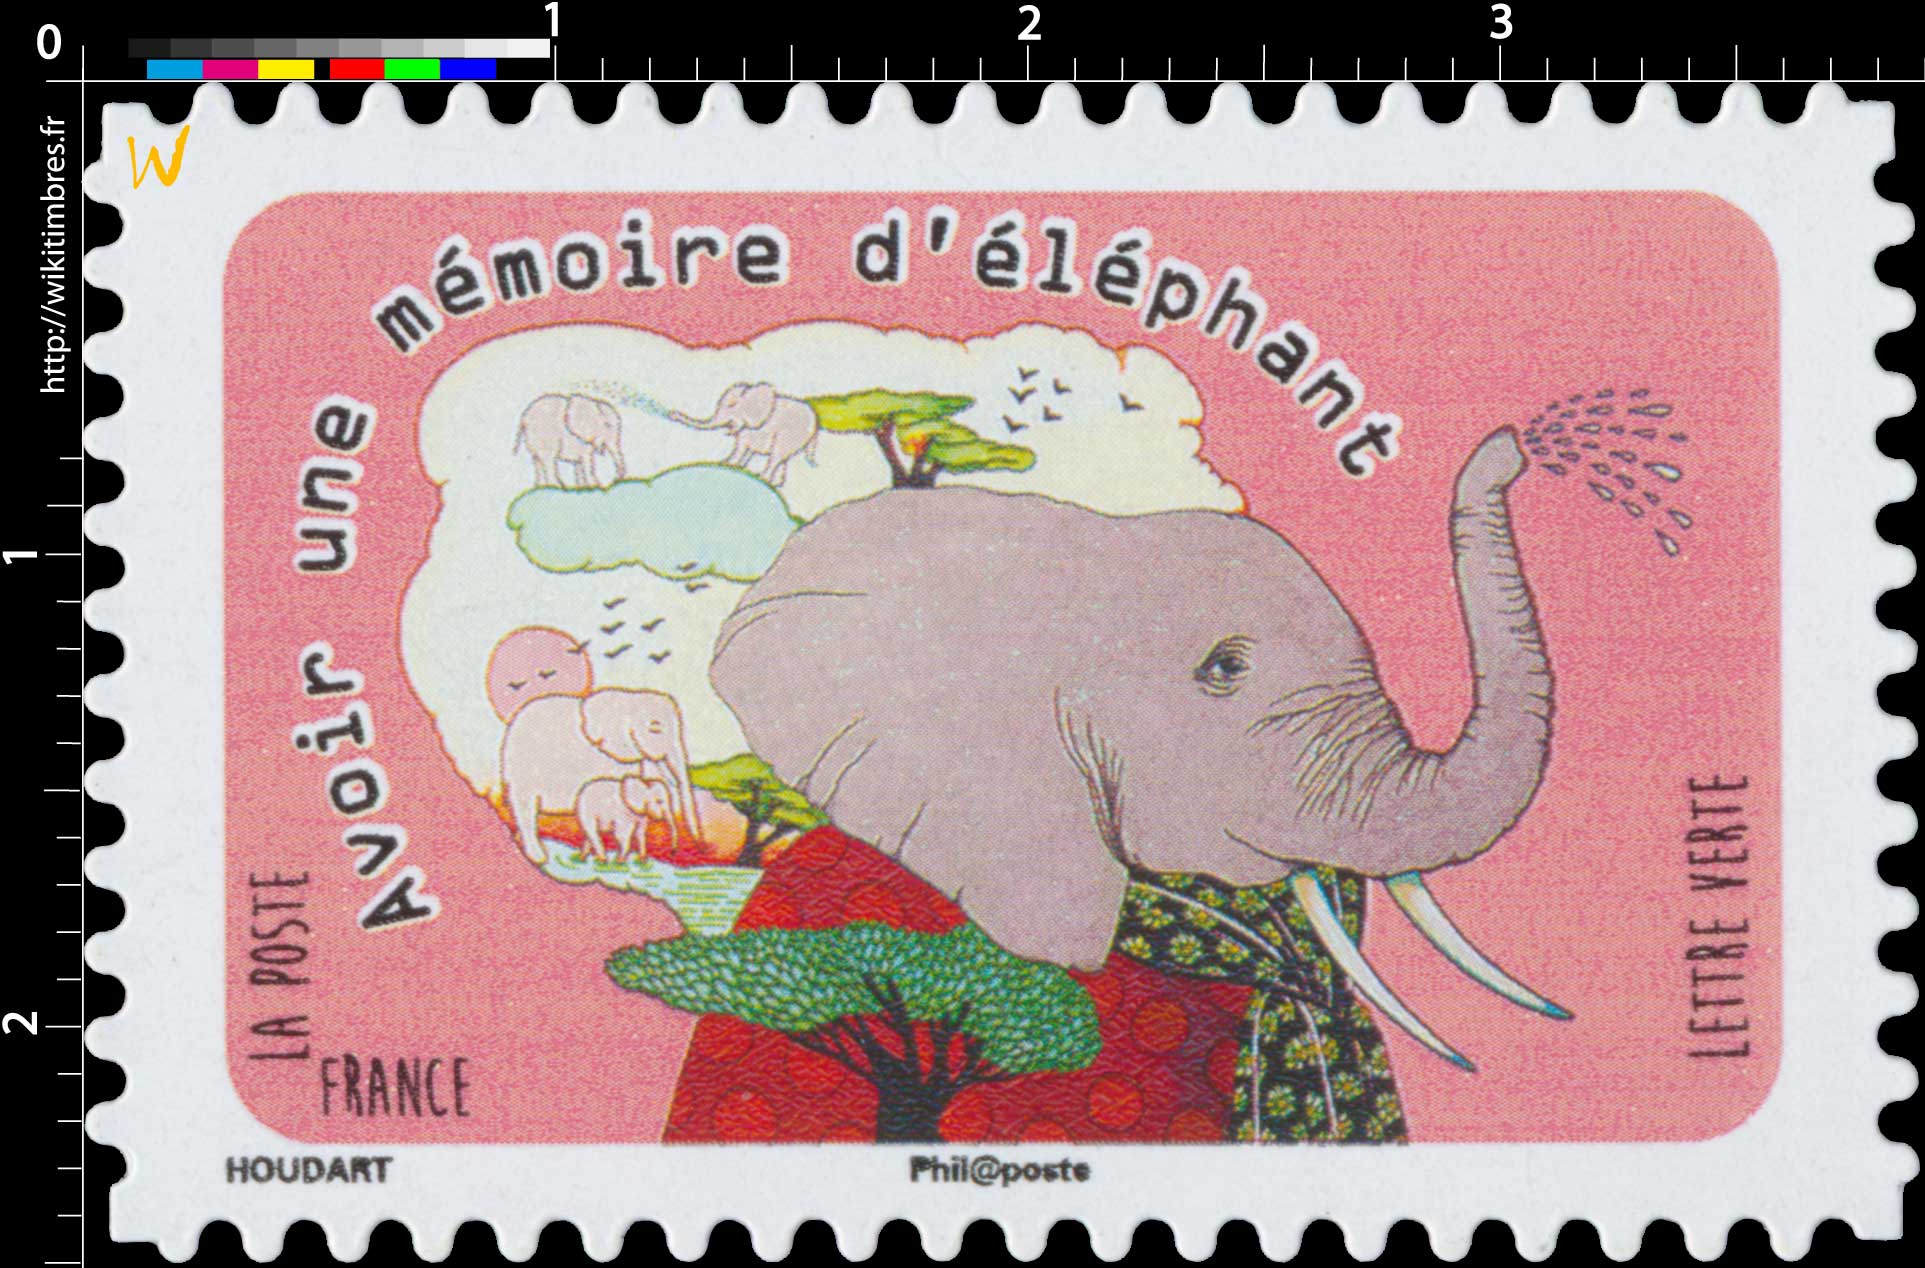 2016 Avoir une mémoire d'éléphant